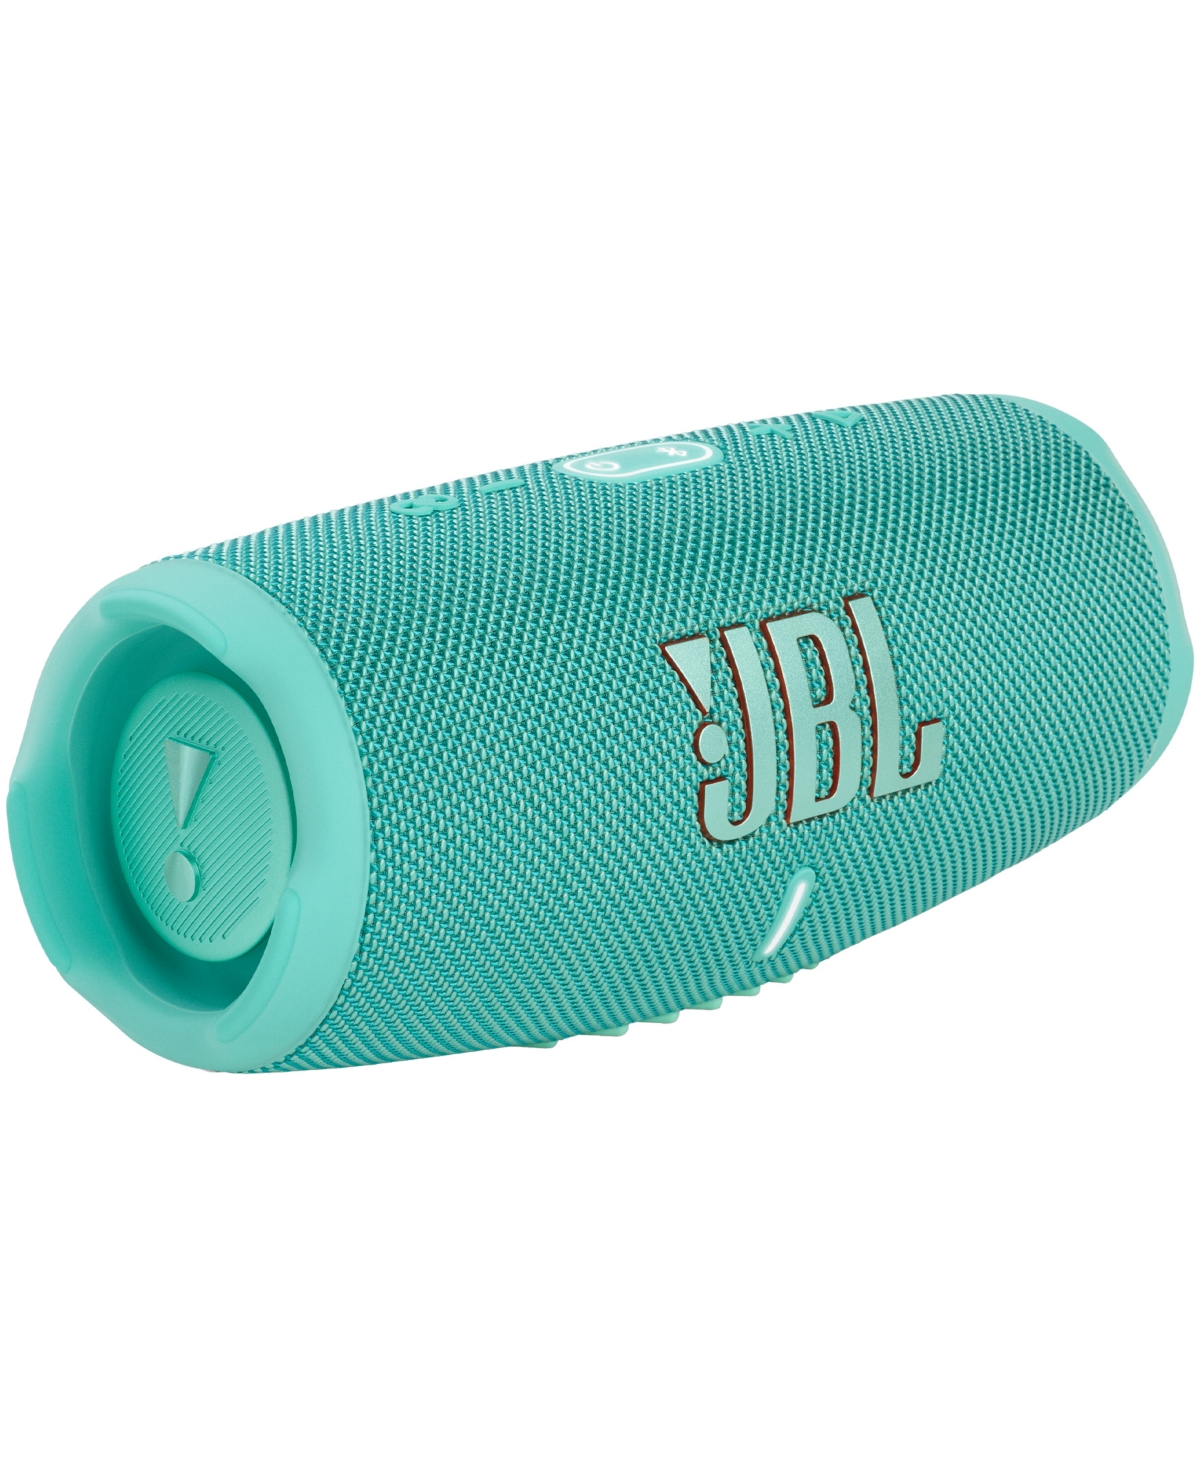 Jbl Charge 5 Water-resistant Bluetooth Speaker In Teal